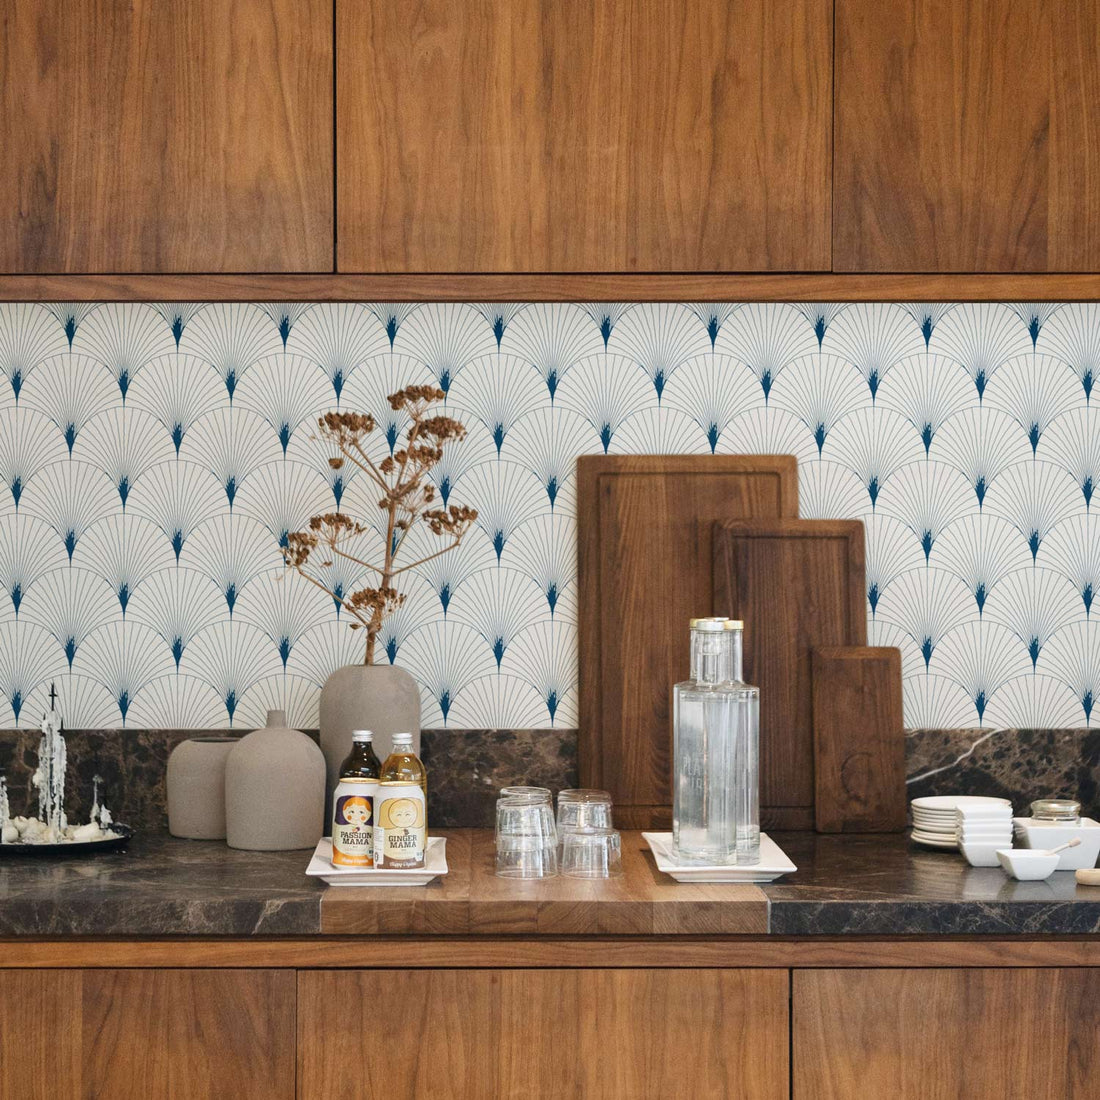 designer kitchen backsplash in light blue detailing